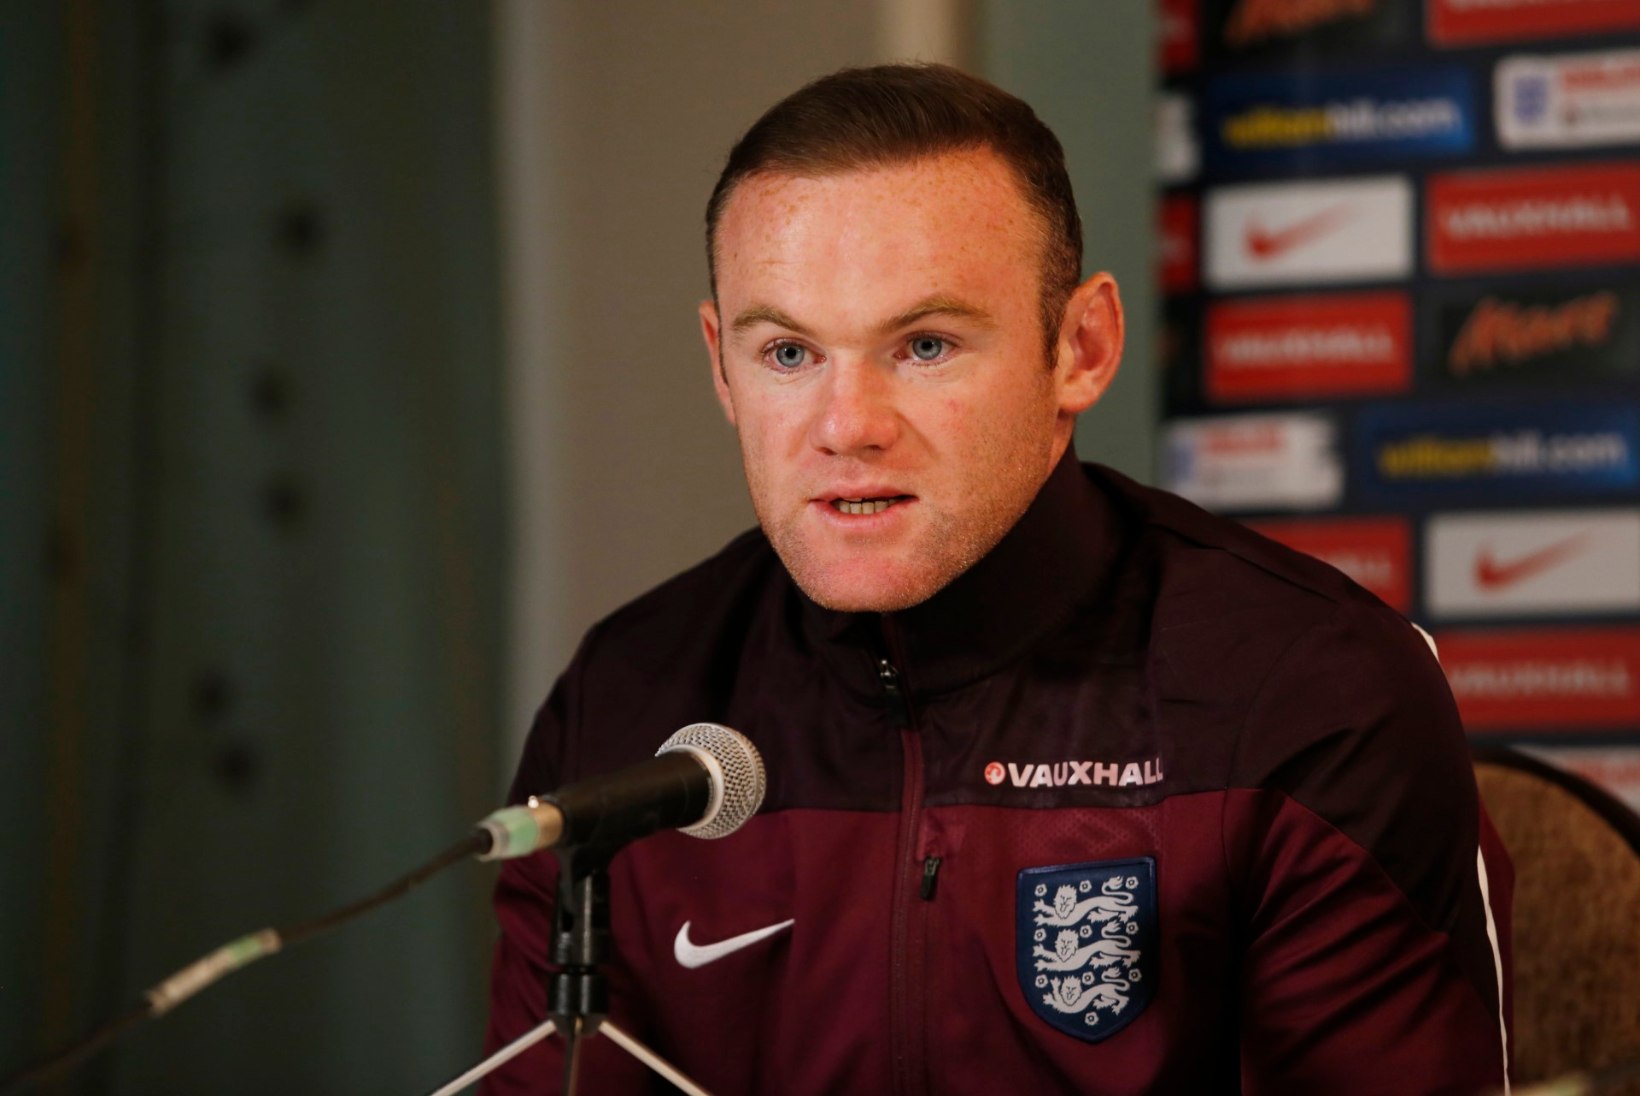 Wayne Rooney sügav kõne Inglismaa - Prantsusmaa kohtumise eel: prantslased näitavad mängides, et nad on terrorismi vastu tugevad 